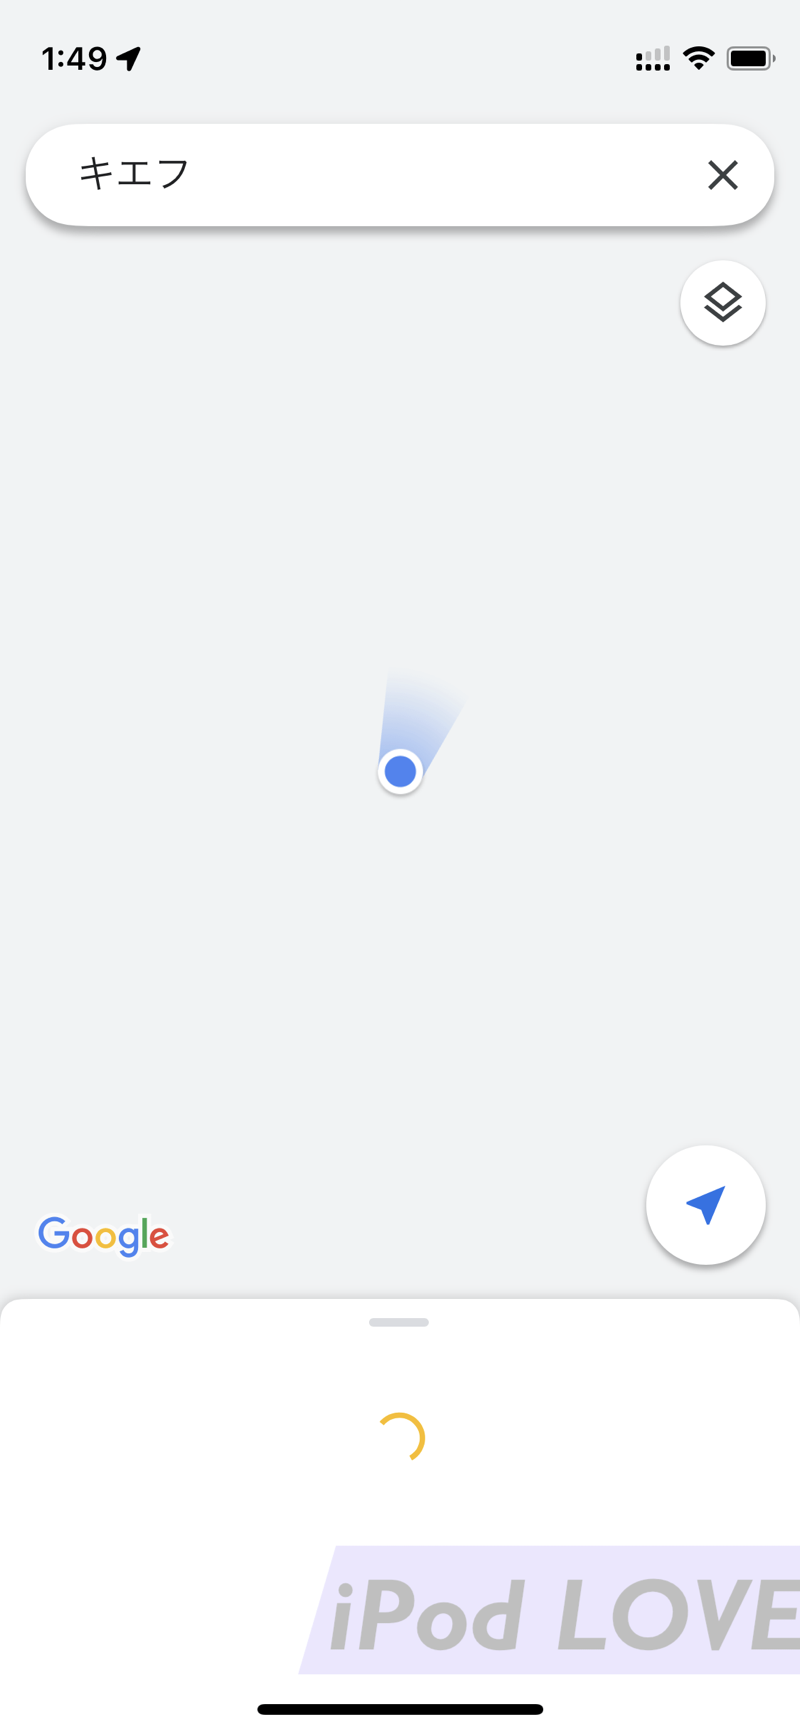 Googlemaps down 03